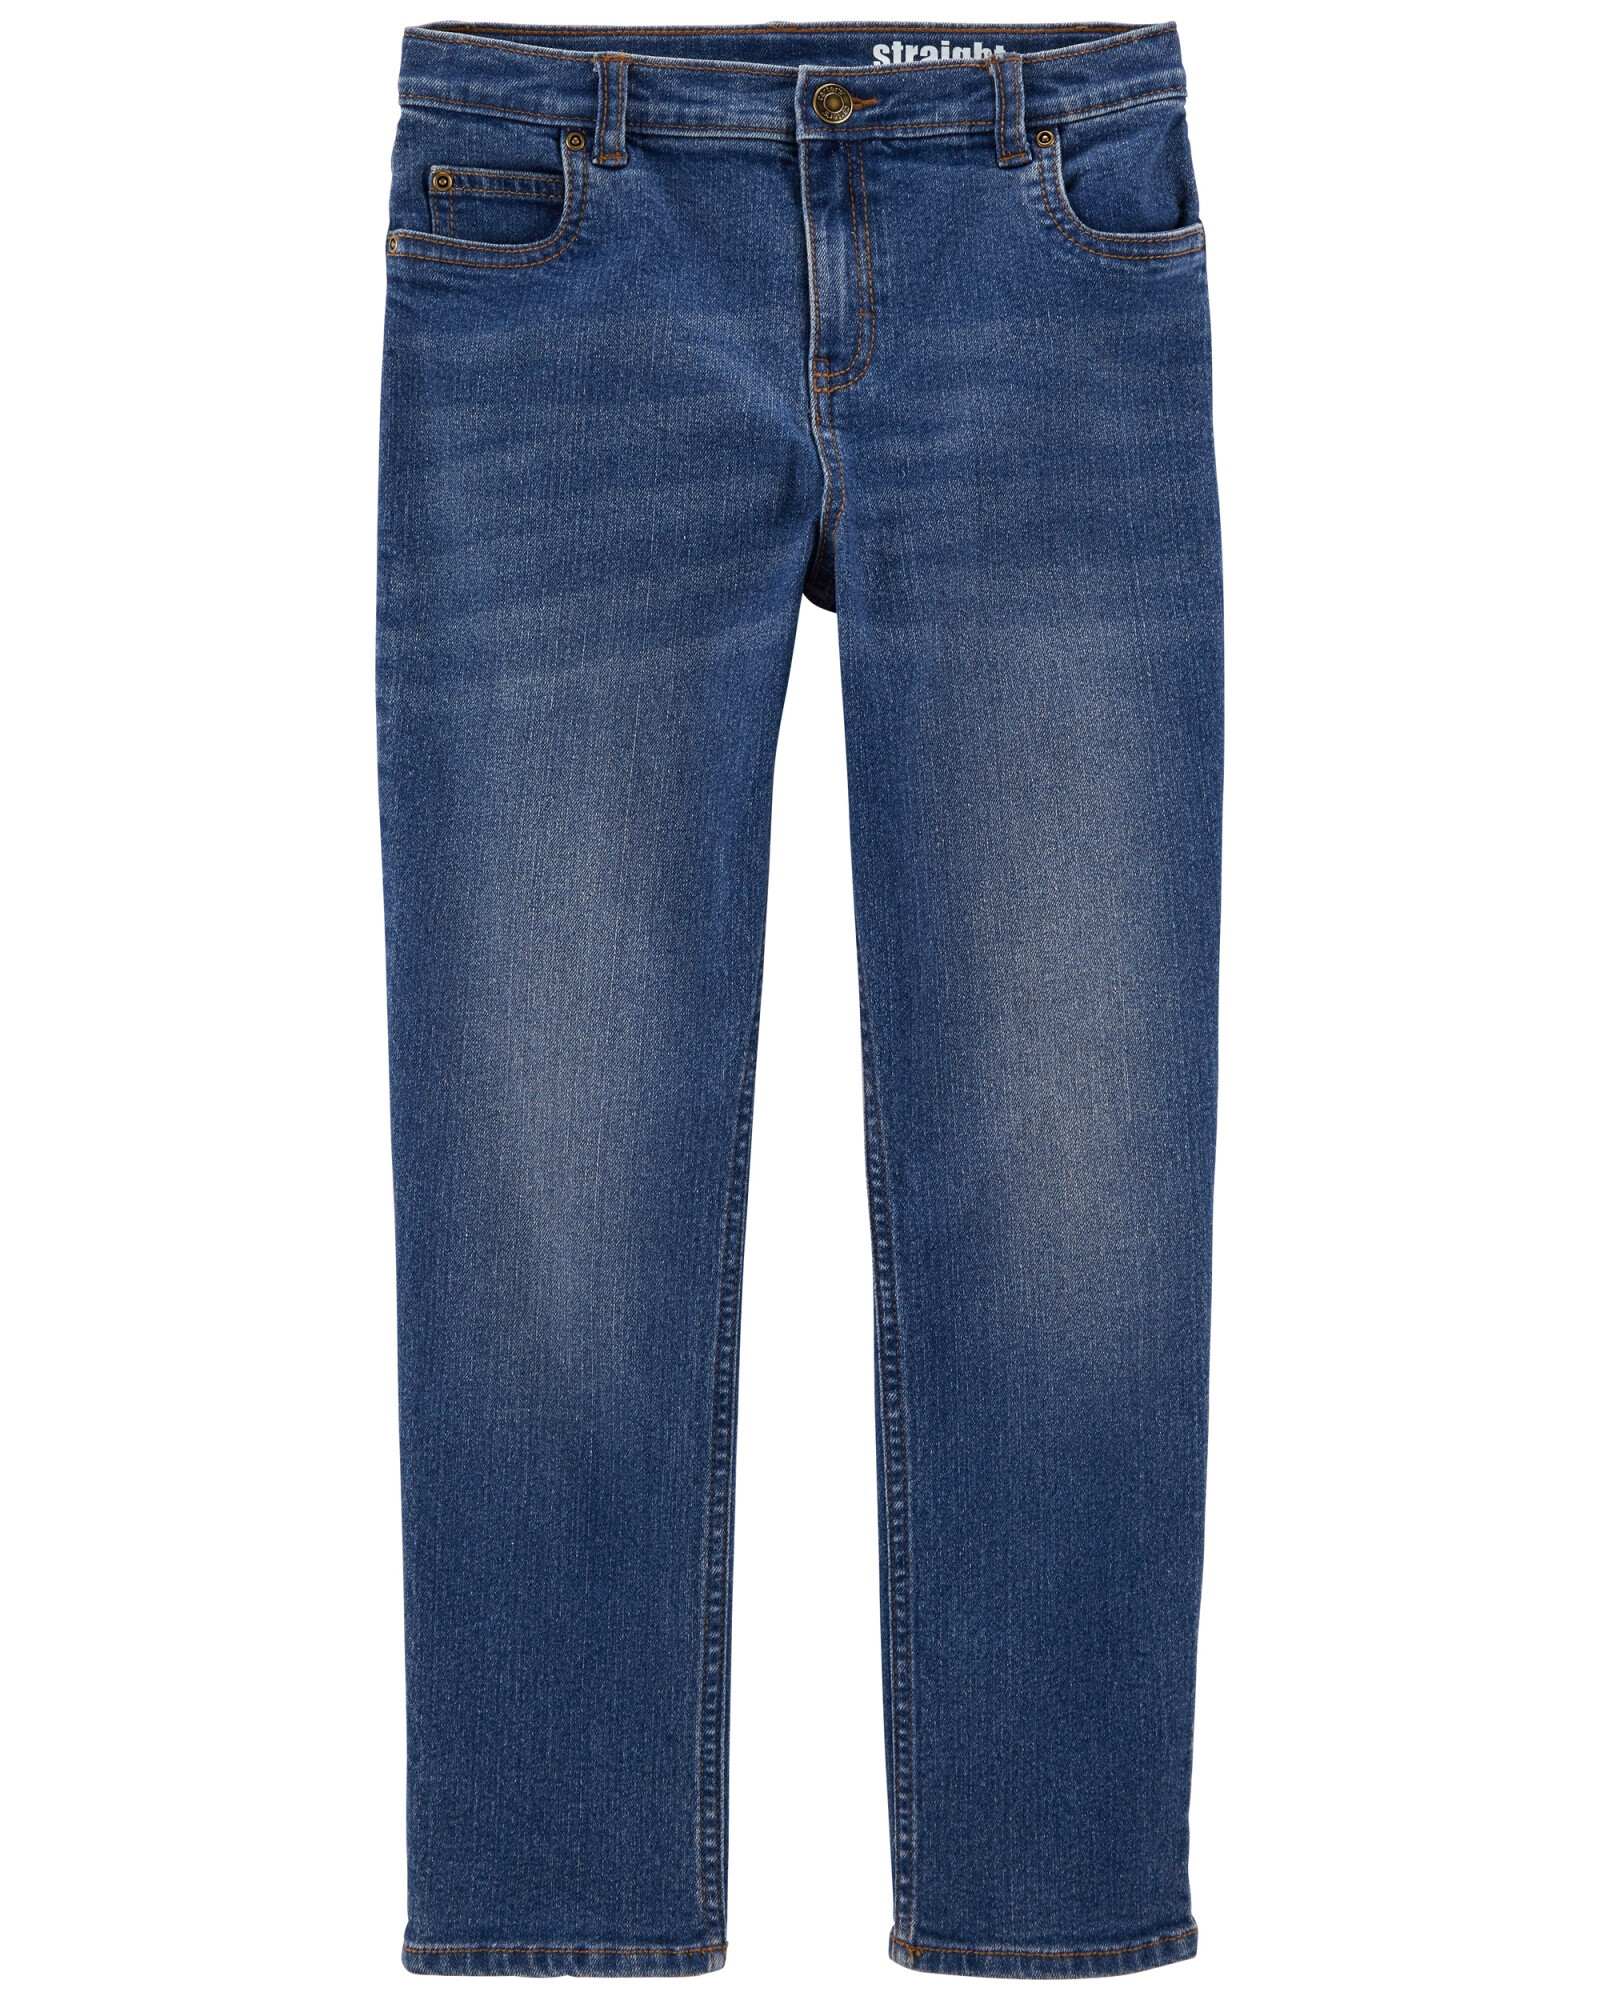 Pantalón de jean clásico lavado medio. Talles 5-8 Sin color